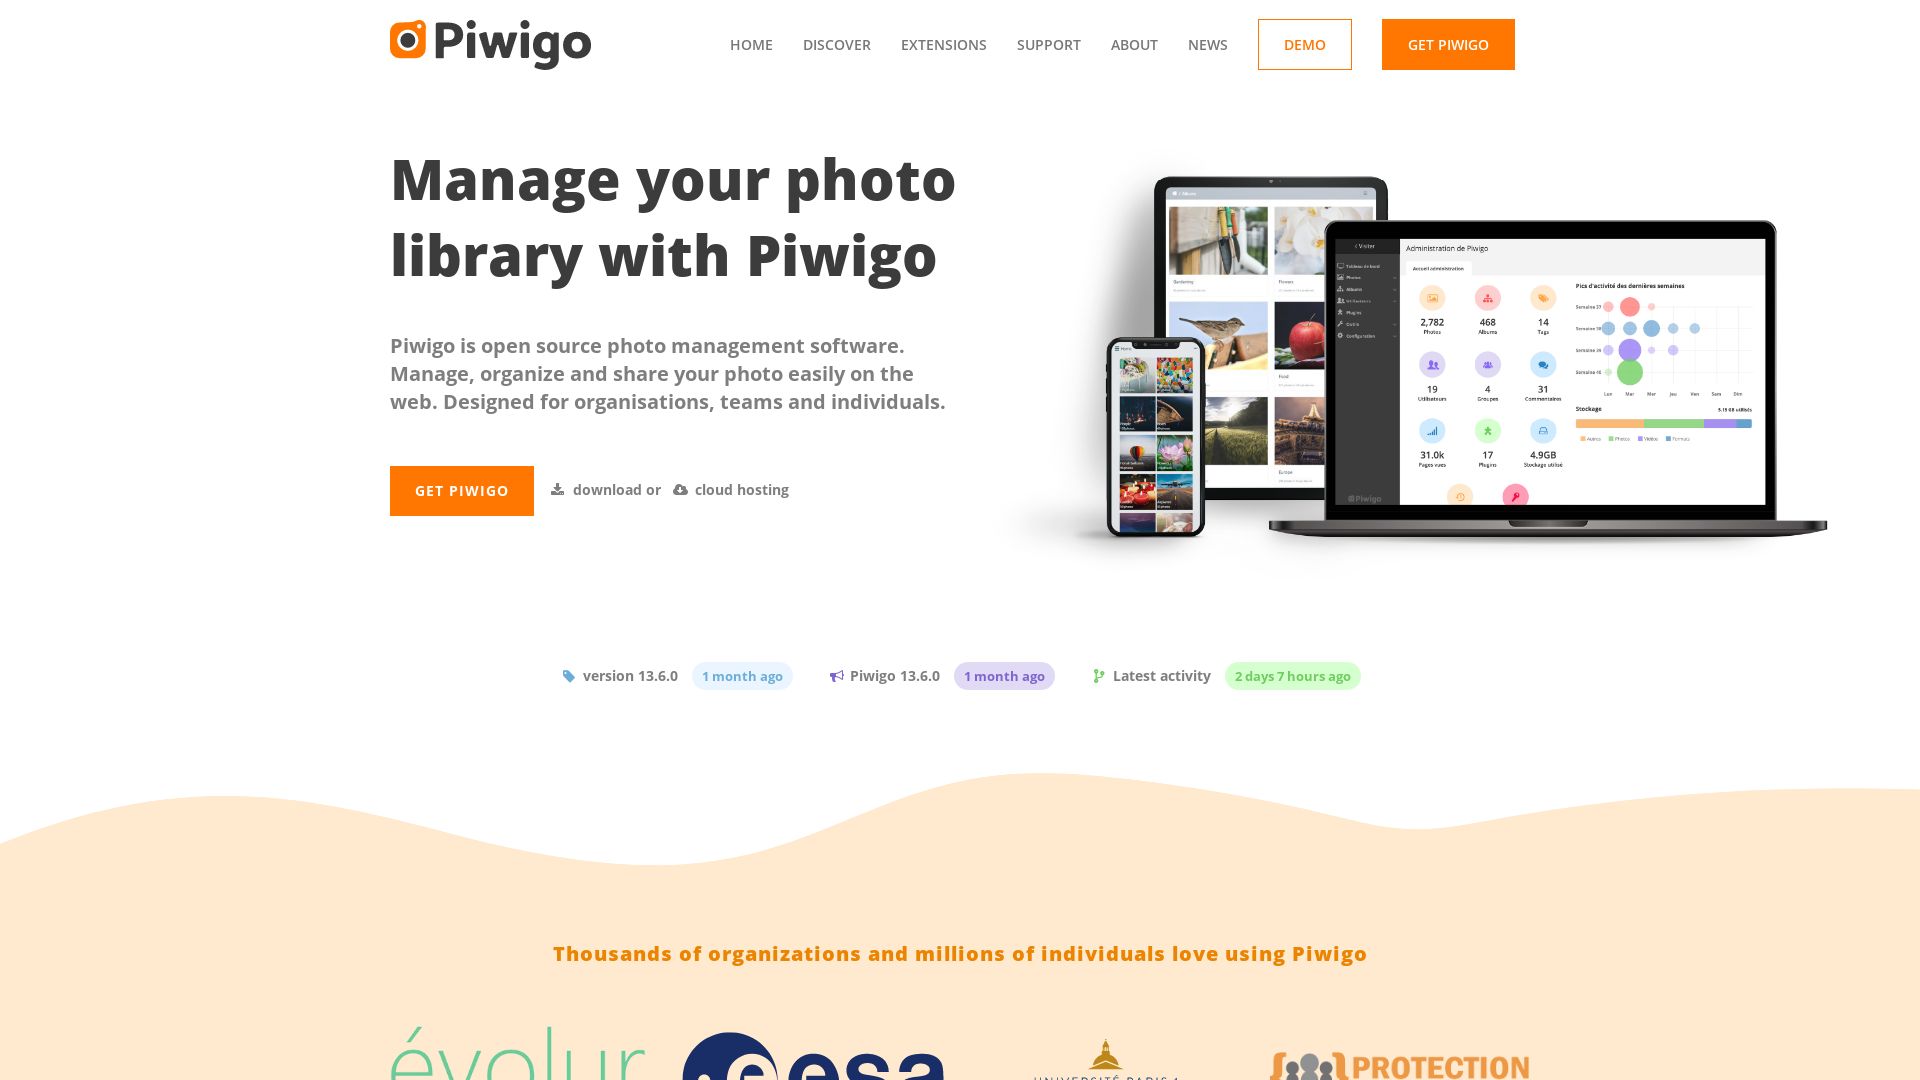 Estado web piwigo.org está   ONLINE